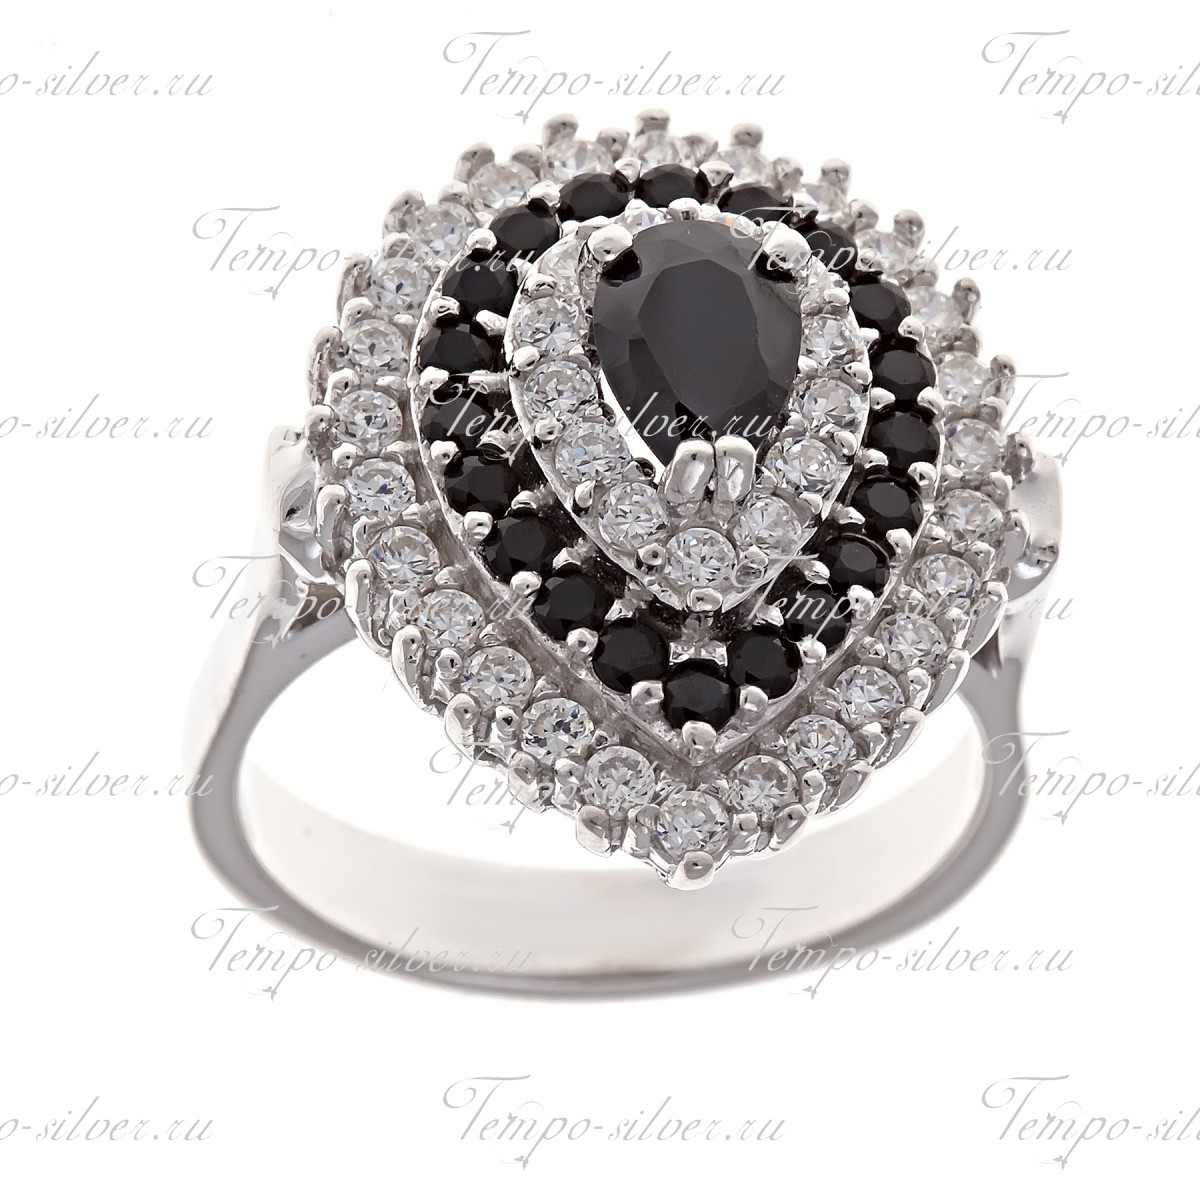 Кольцо серебряное каплевидной формы с чередующимися черно-белыми камнями